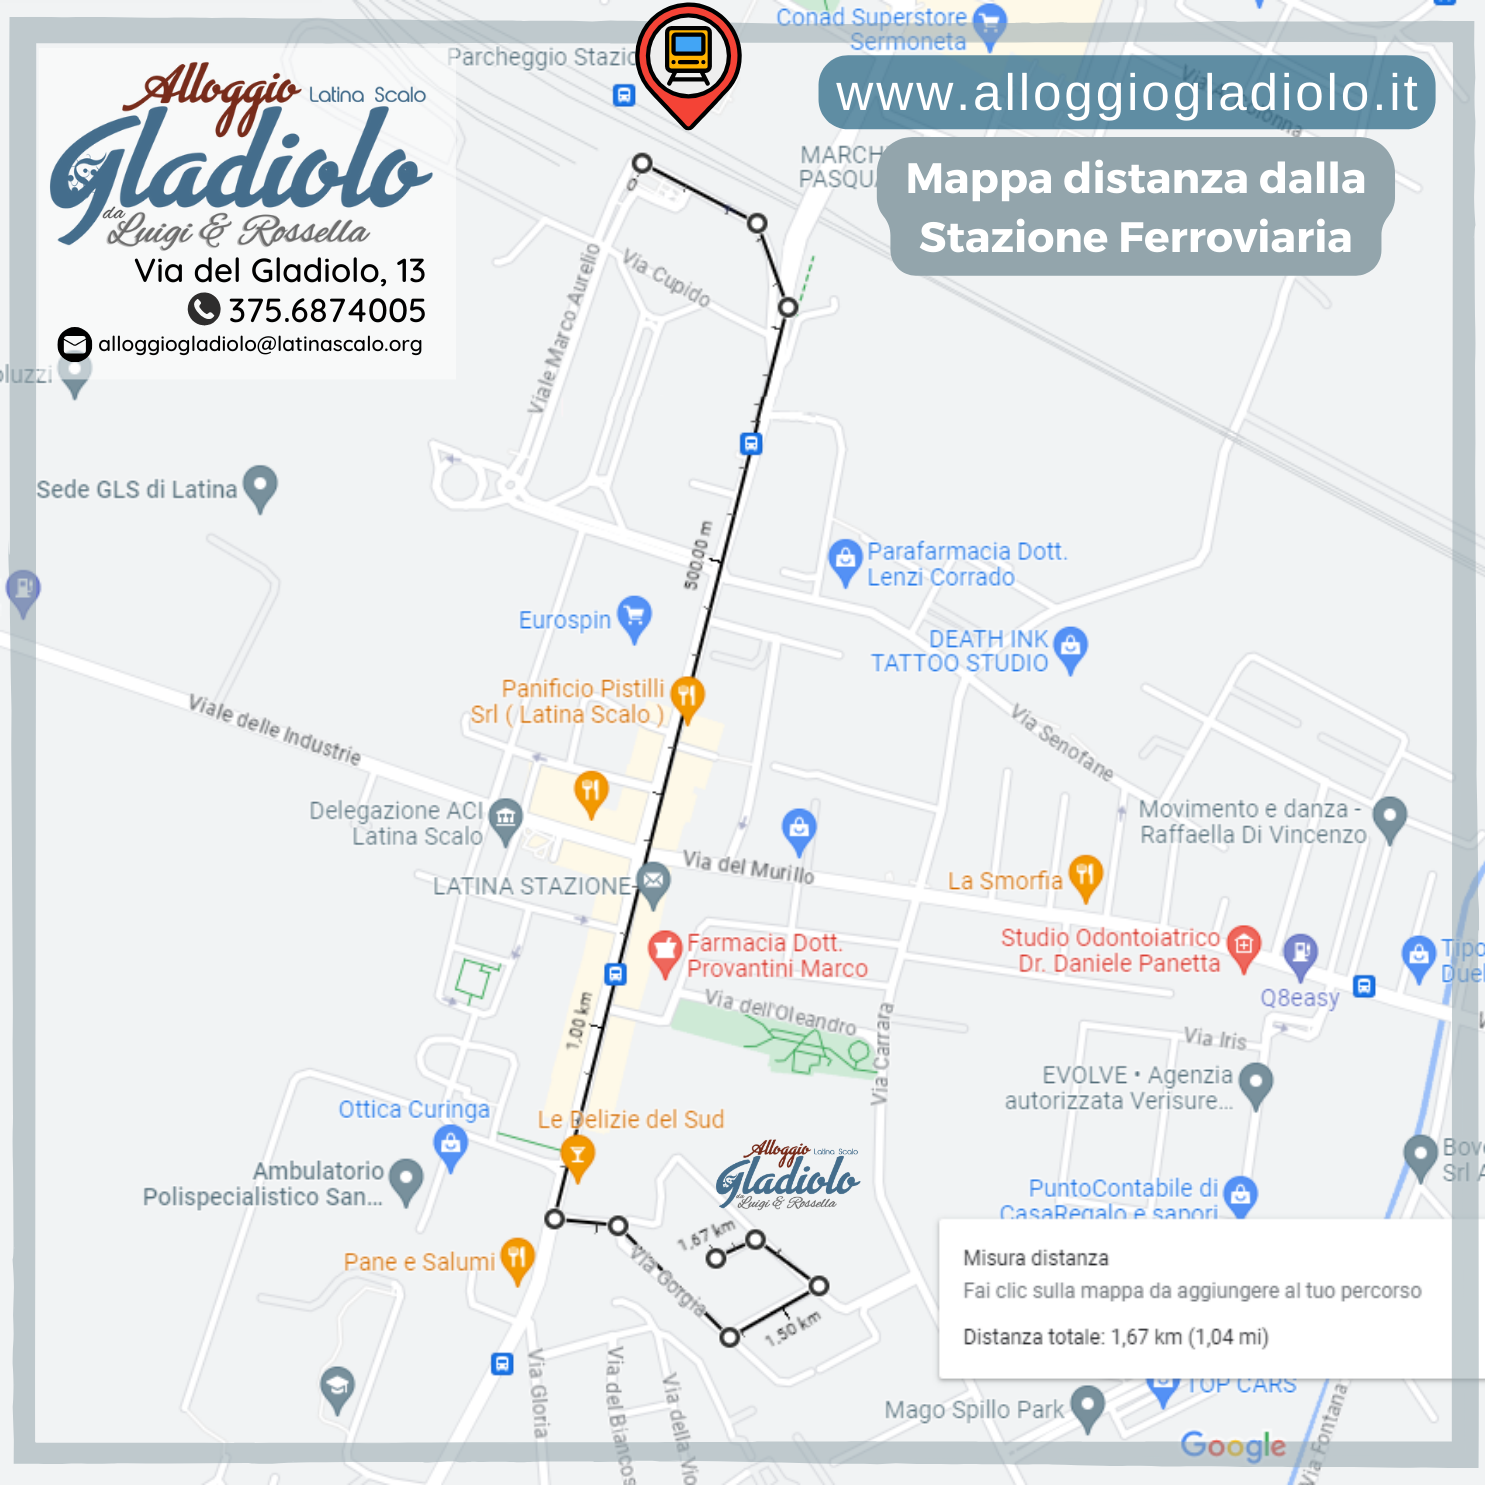 Alloggio Gladiolo - Latina Scalo - Mappa percorso da Stazione Ferroviaria